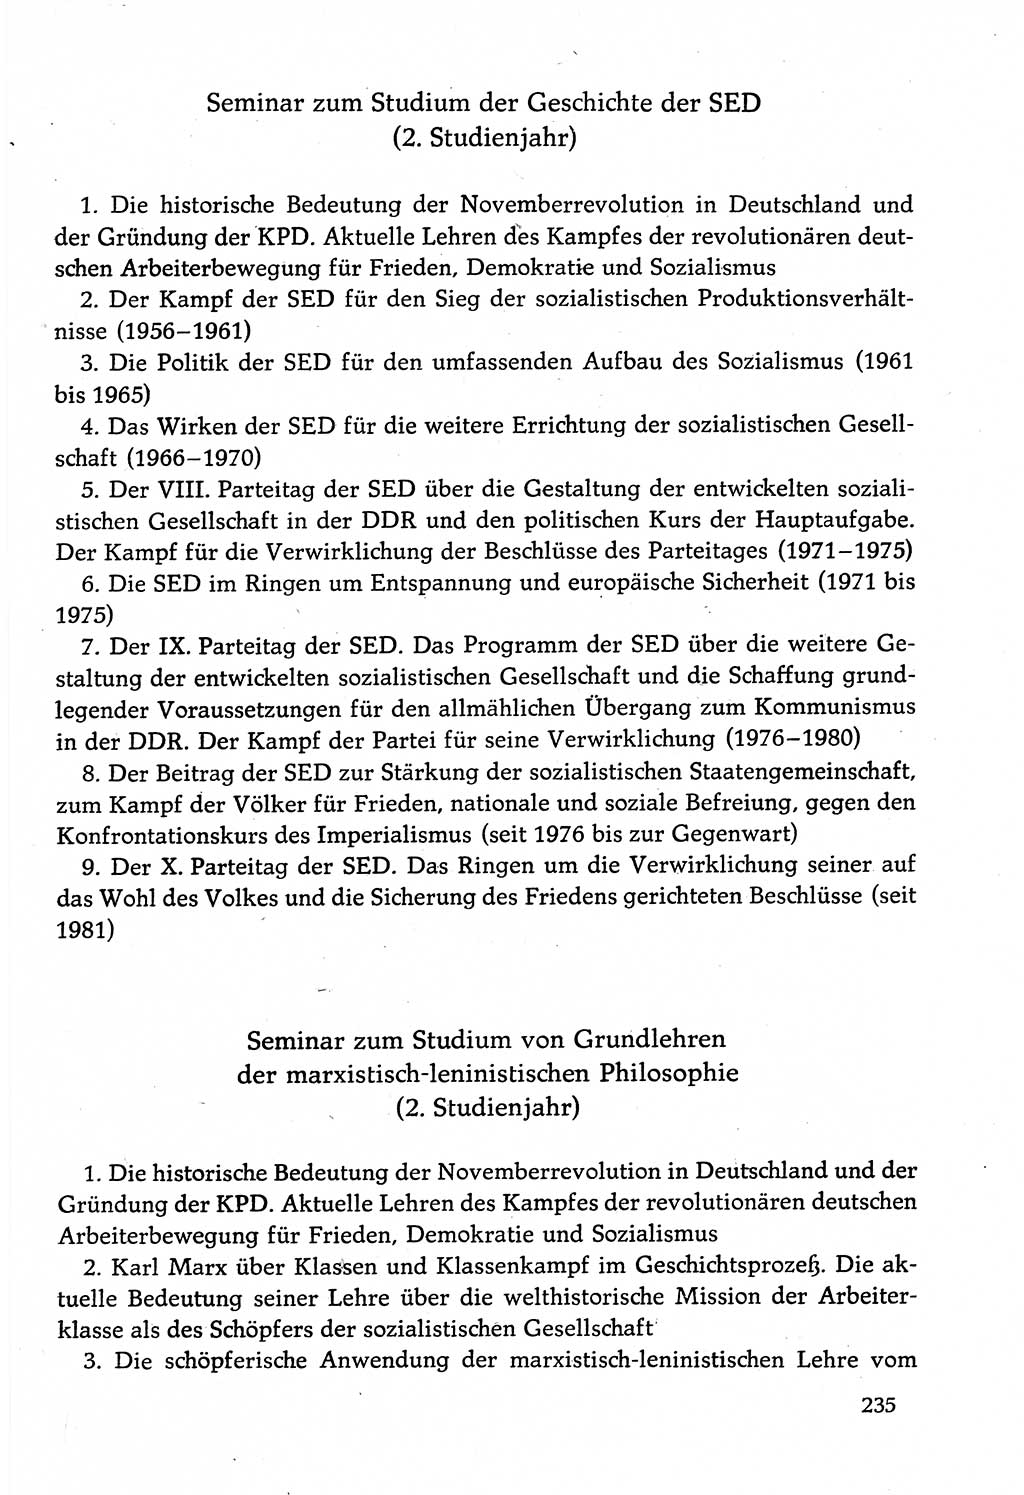 Dokumente der Sozialistischen Einheitspartei Deutschlands (SED) [Deutsche Demokratische Republik (DDR)] 1982-1983, Seite 235 (Dok. SED DDR 1982-1983, S. 235)